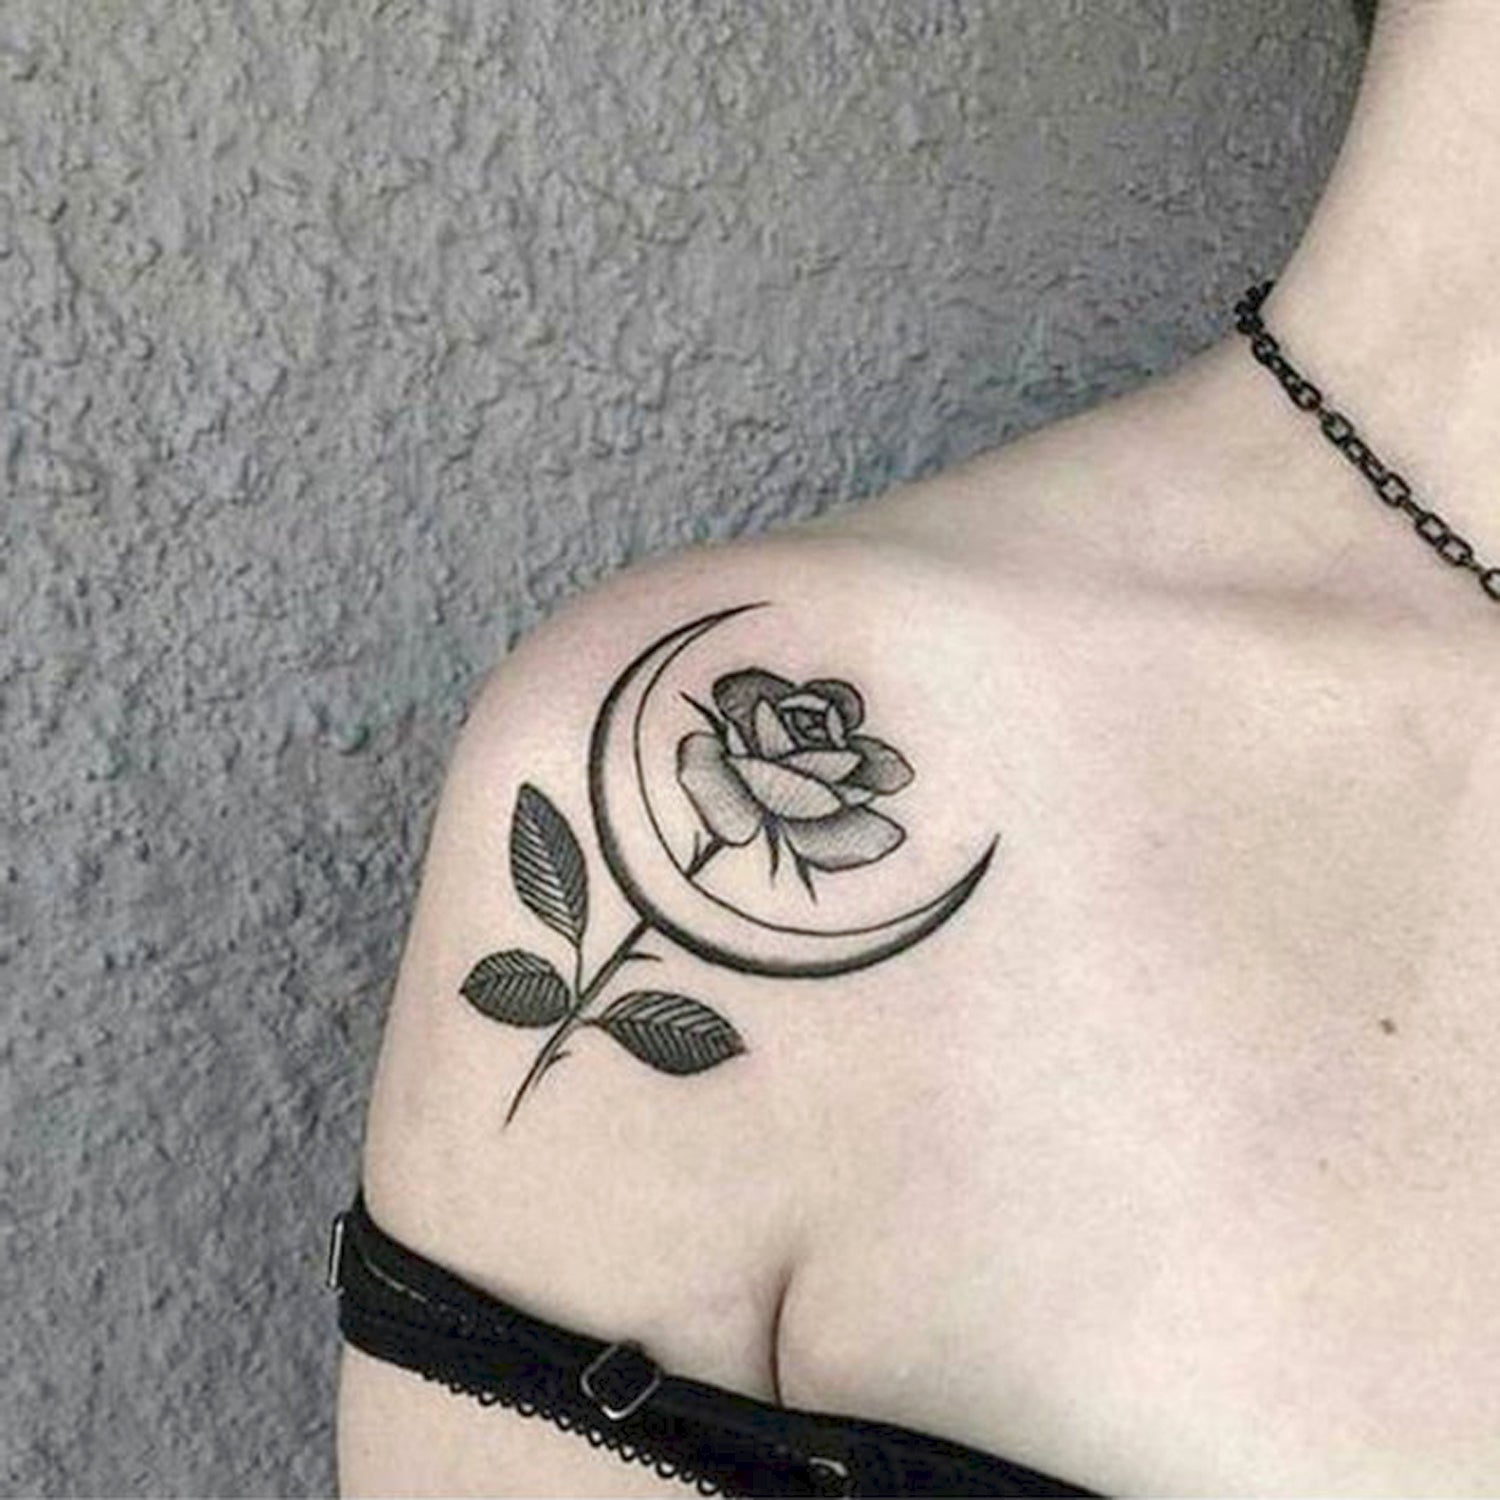 Sophisticated Rose Tattoo Designs – IMAGELLA